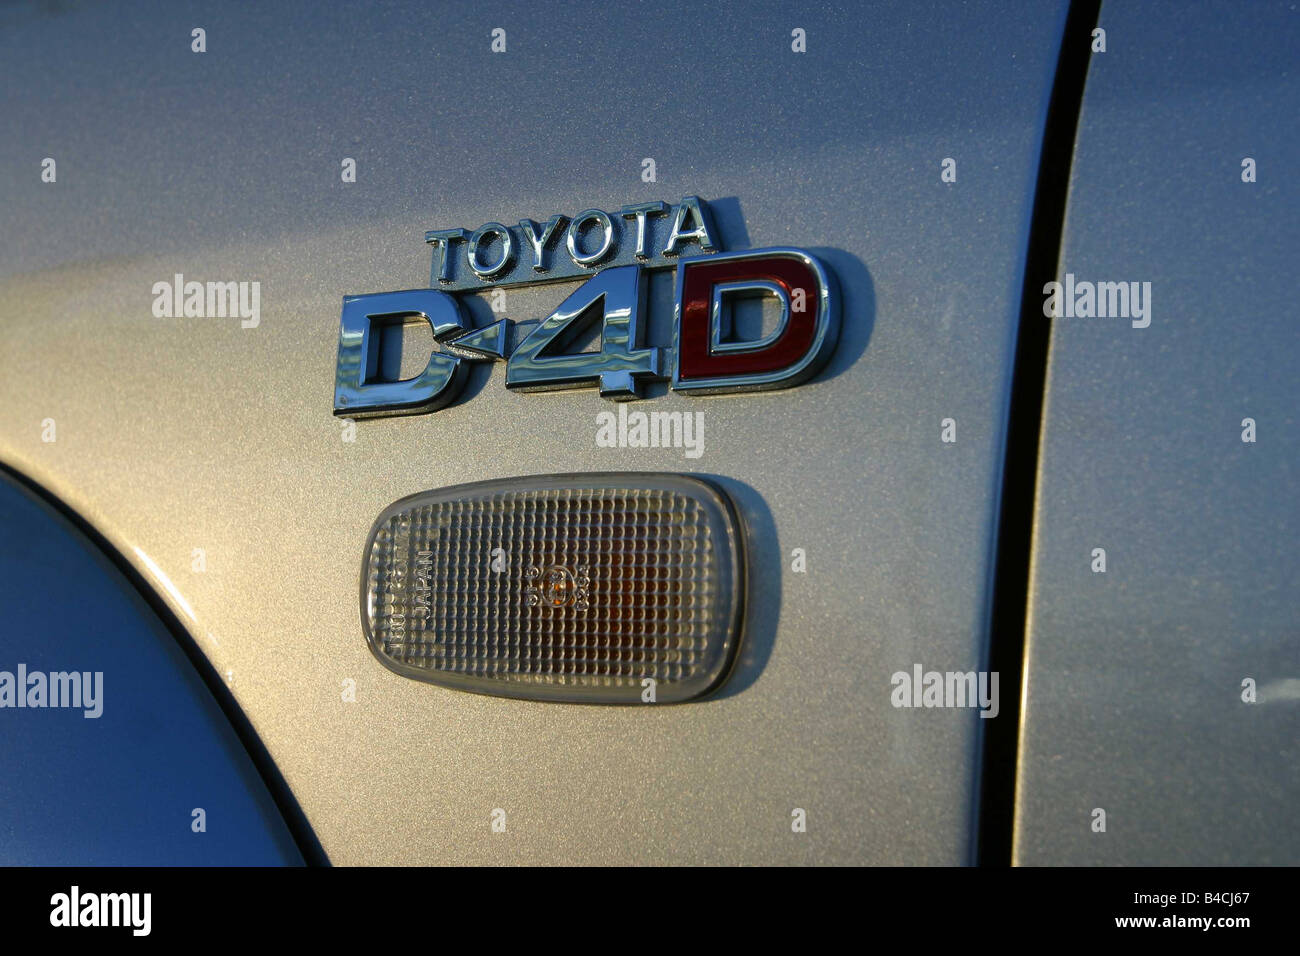 Coche Toyota Landcruiser, cross country vehículo, modelo del año 2002-, la plata vista detallada, la designación del modelo Foto de stock